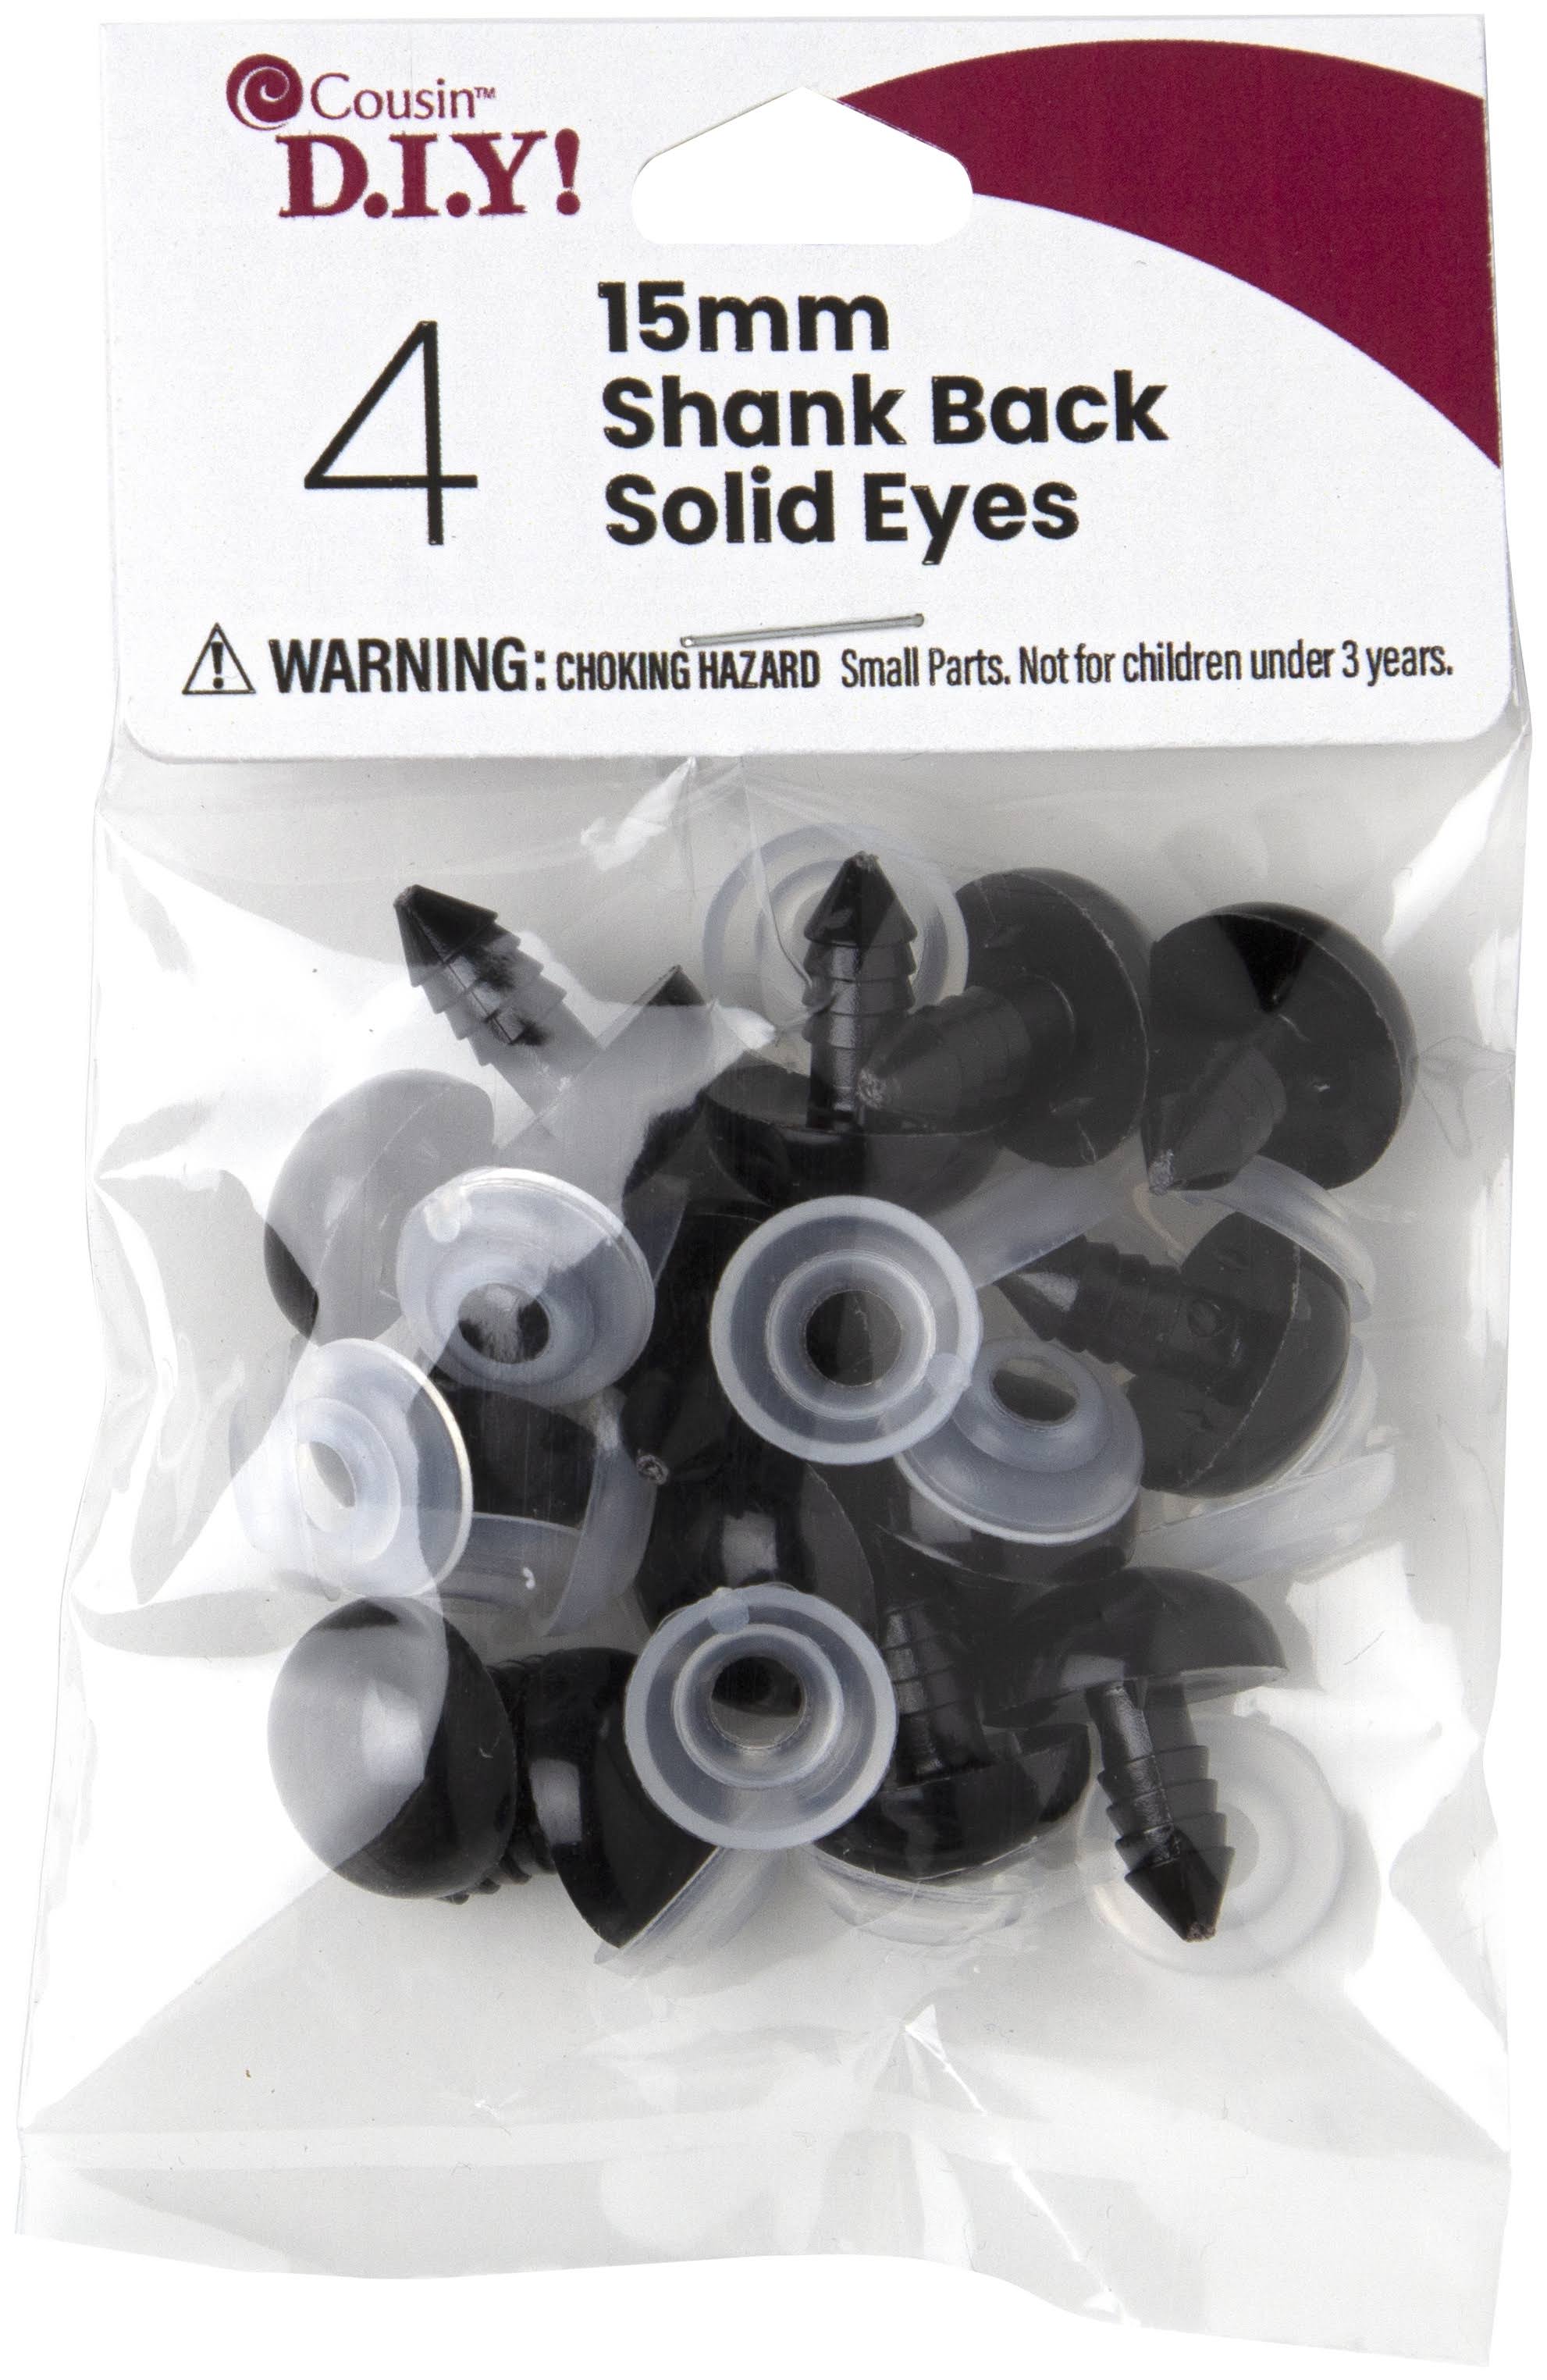 Shank Back Solid Eyes 15mm 4/pkg-black -40000421 Cousin